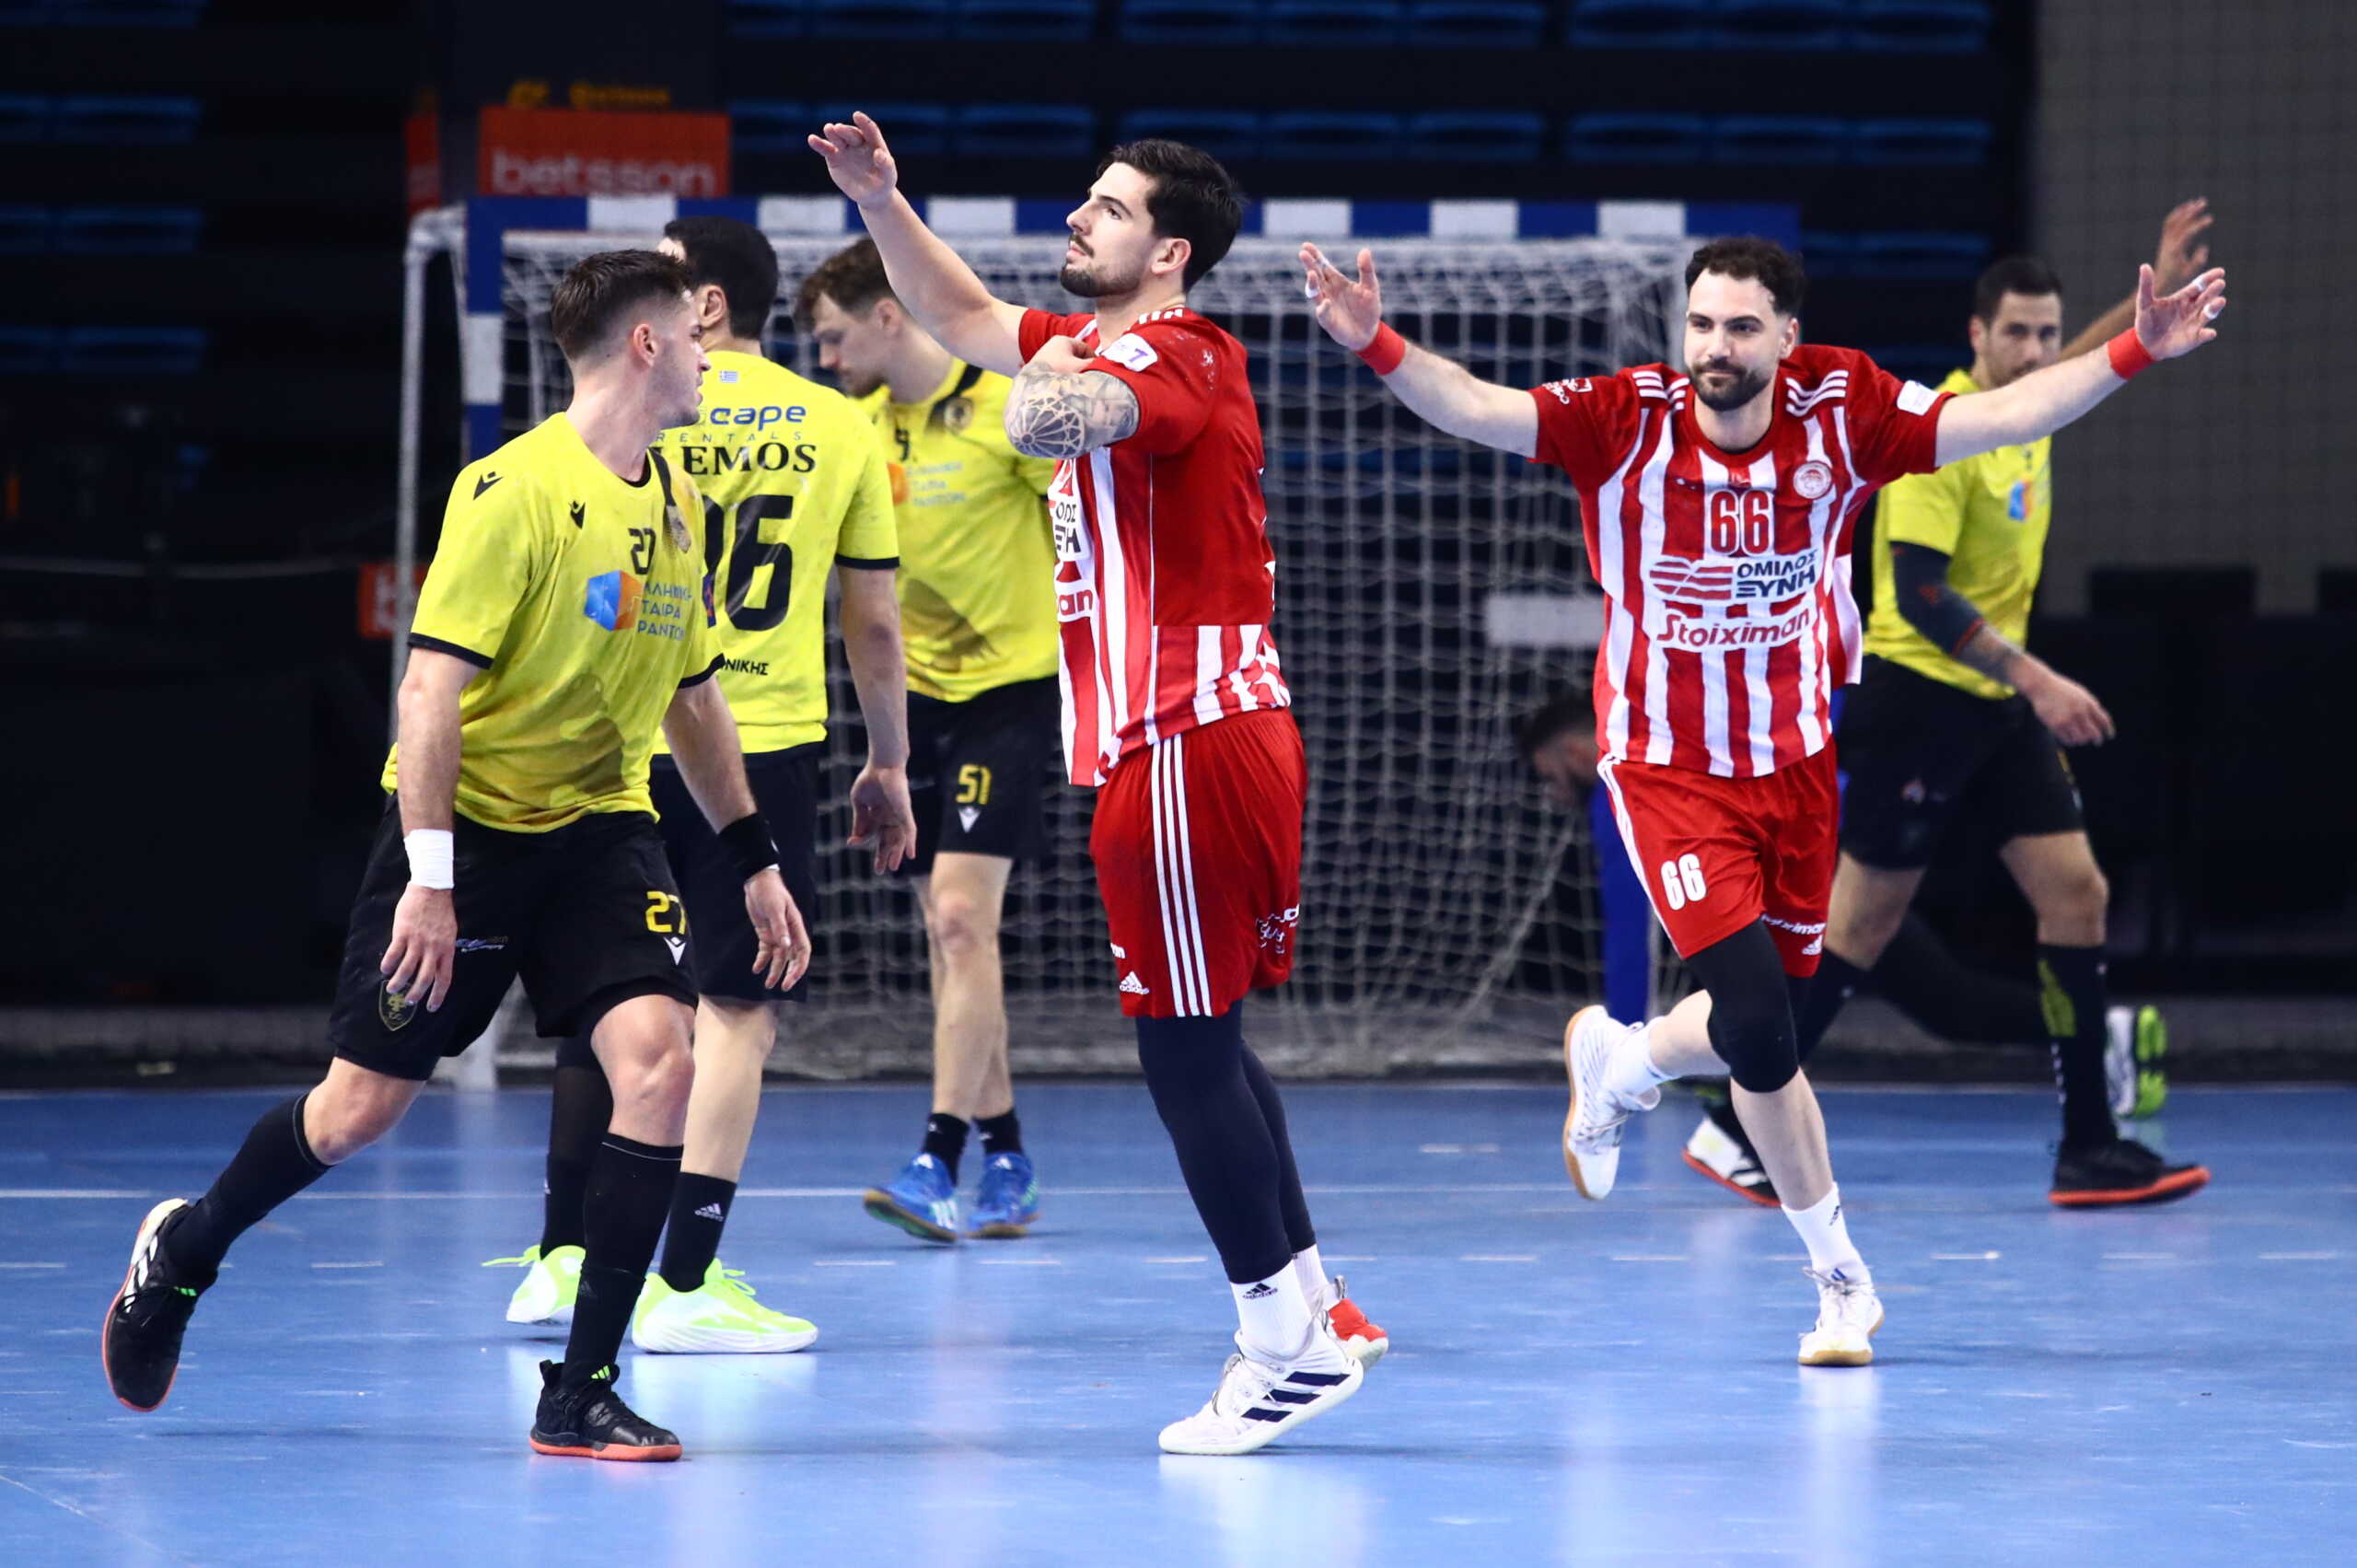 ΑΕΚ – Ολυμπιακός 23-27: Διπλό και πρώτη θέση για τους Πειραιώτες στην Handball Premier